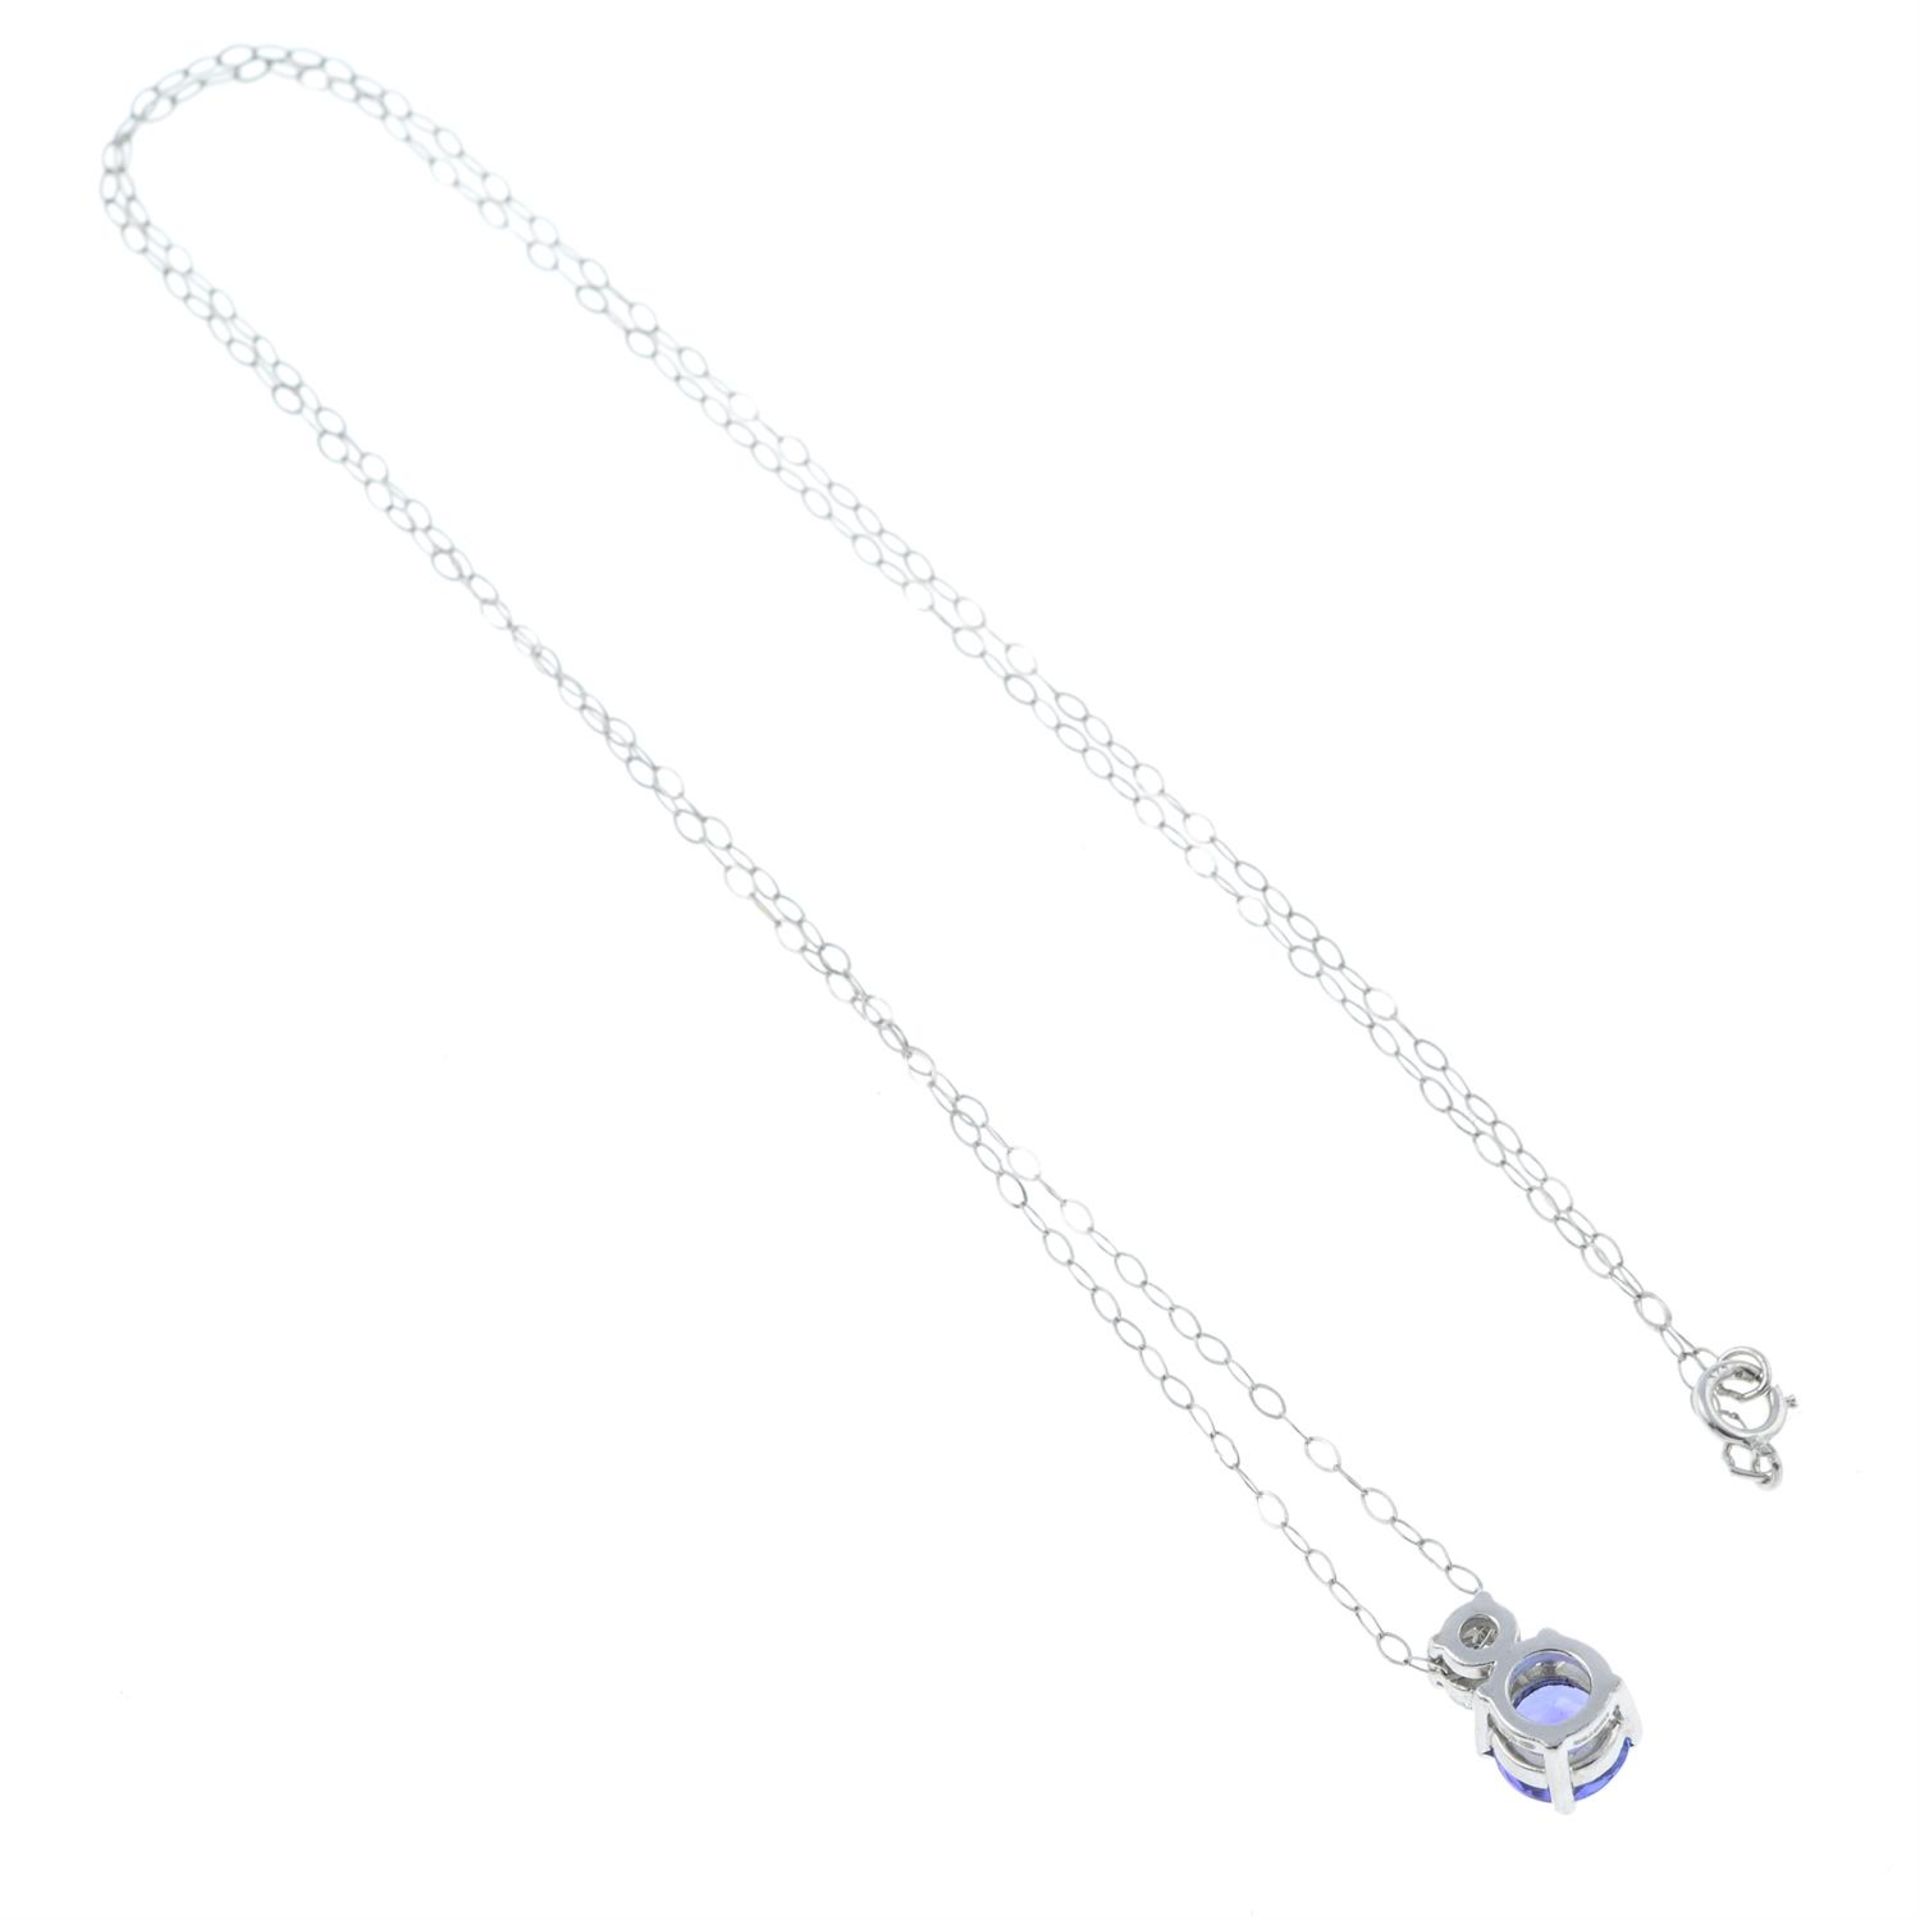 A tanzanite and brilliant-cut diamond pendant with chain. - Image 2 of 2